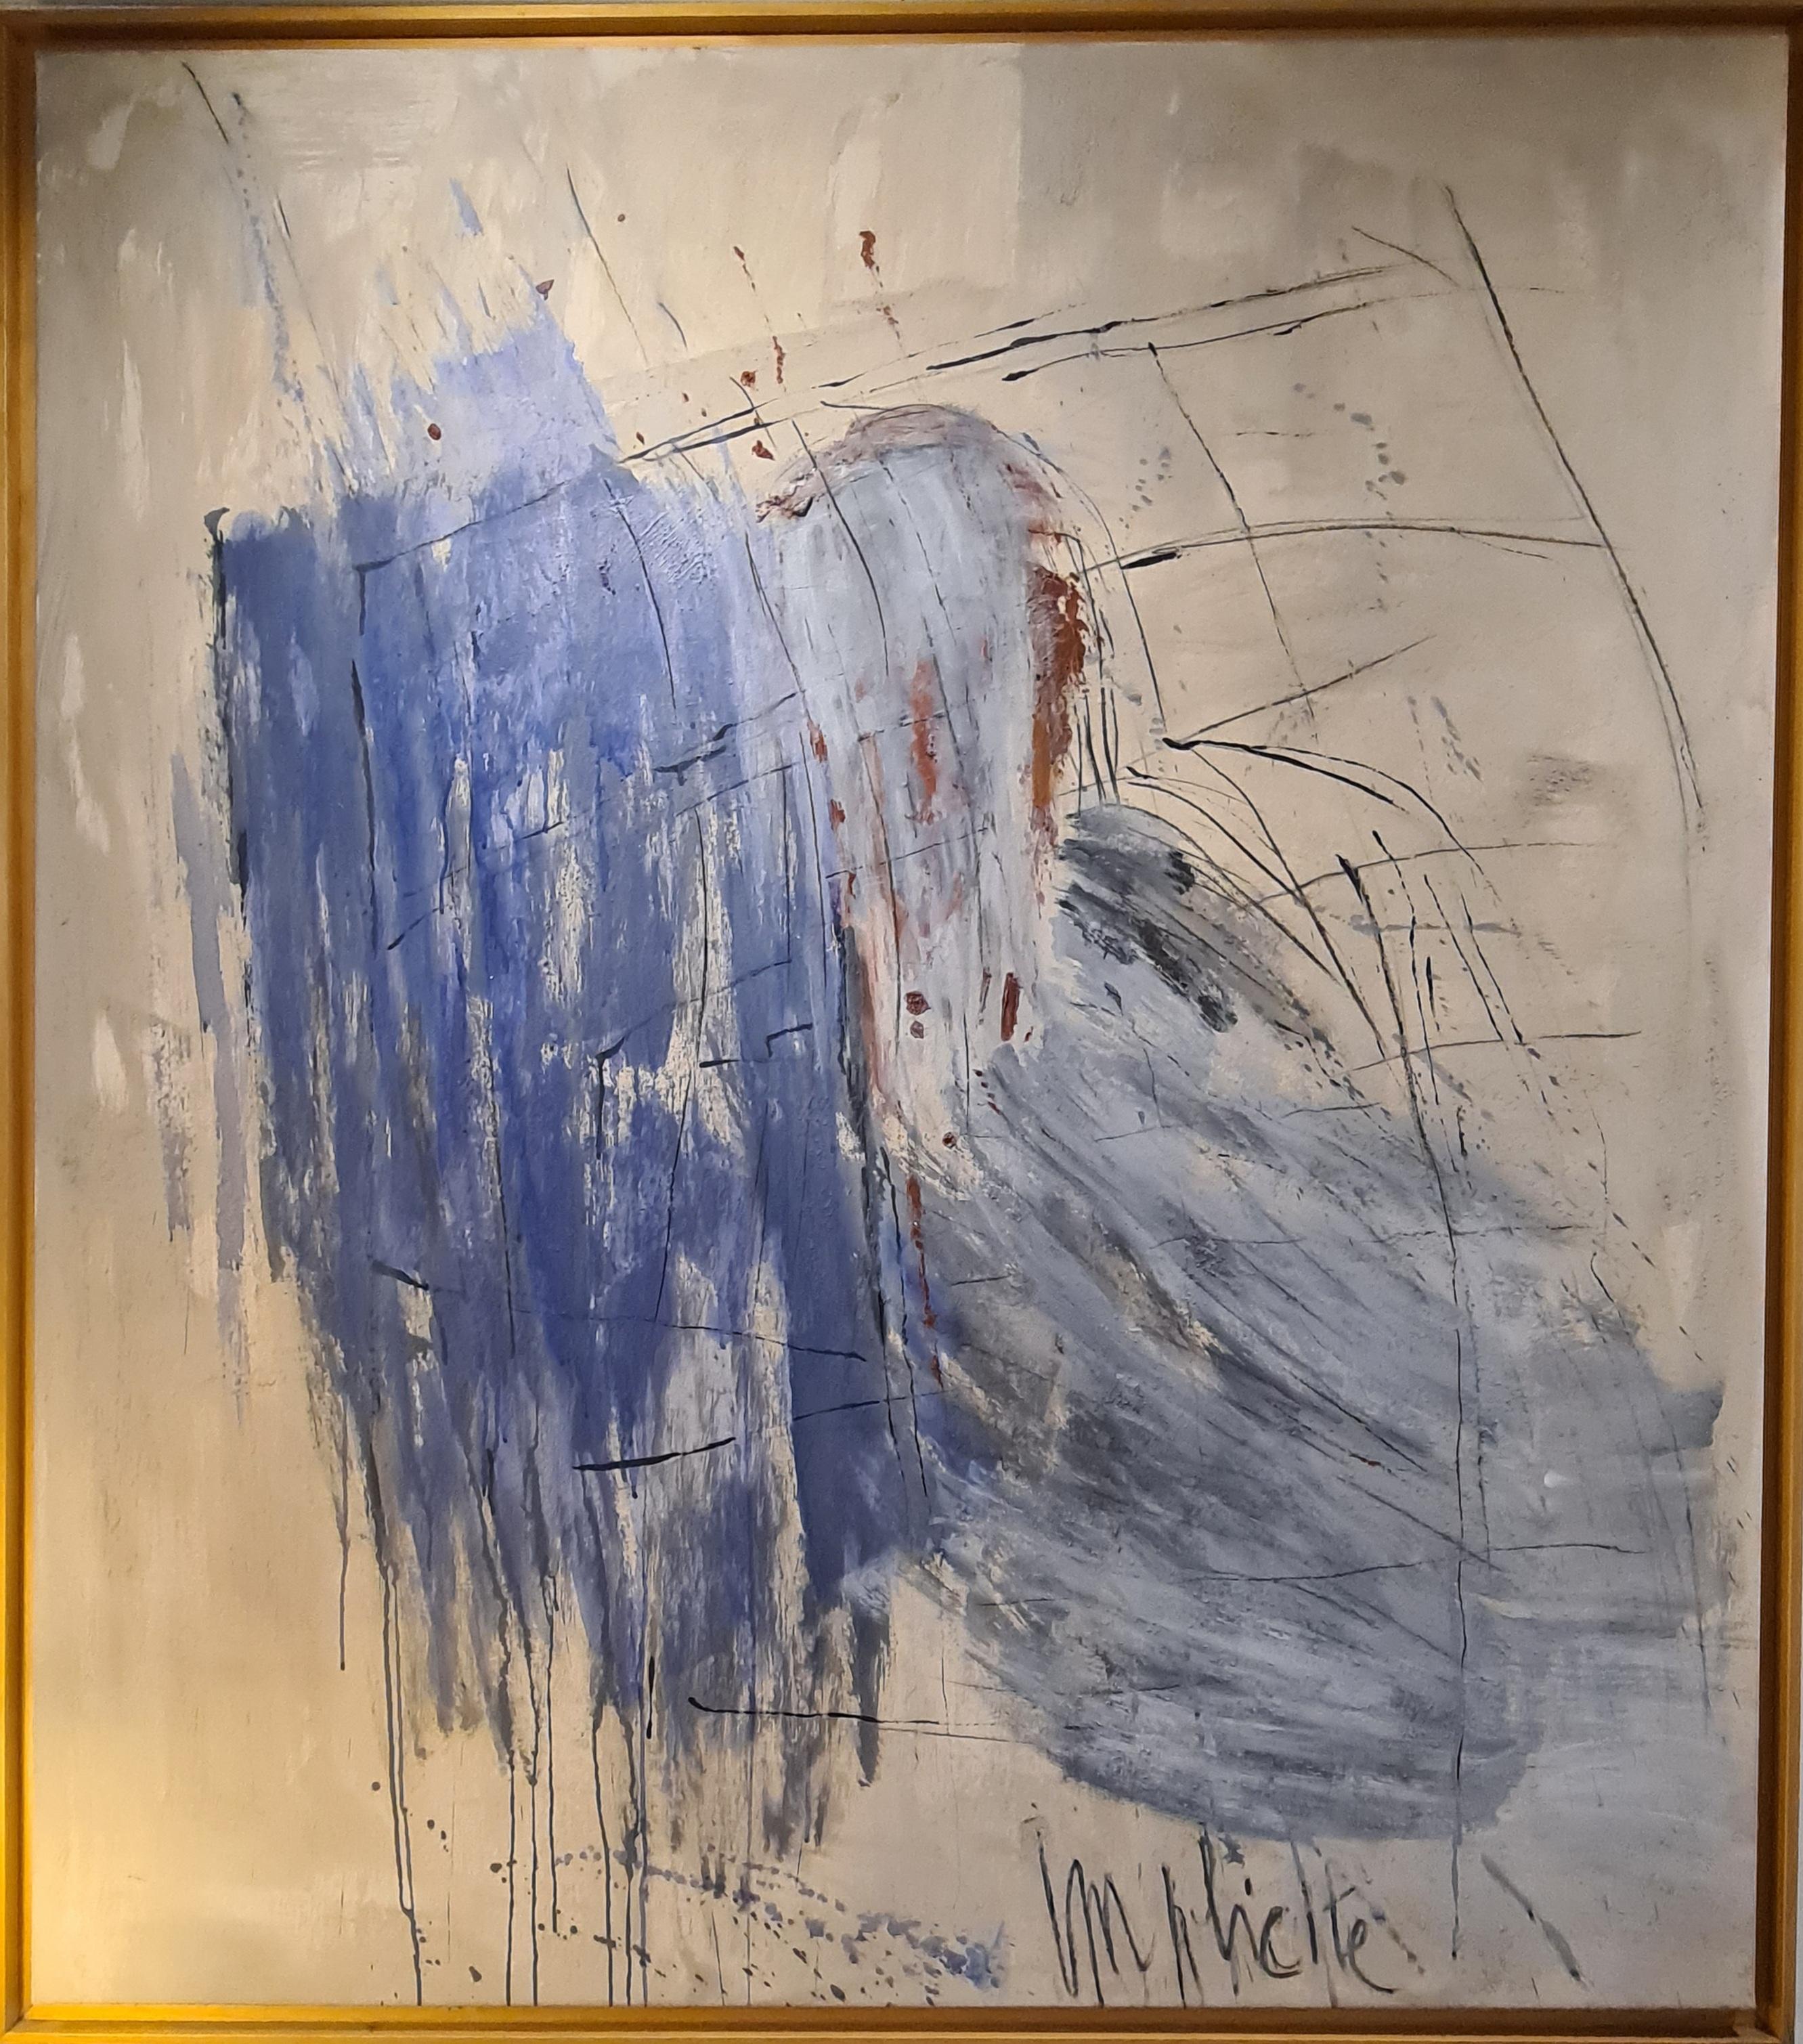 Christian Manoury Abstract Painting – Implicite“, großformatiges abstrakt-expressionistisches Ölgemälde, Acryl und Sand auf Leinwand